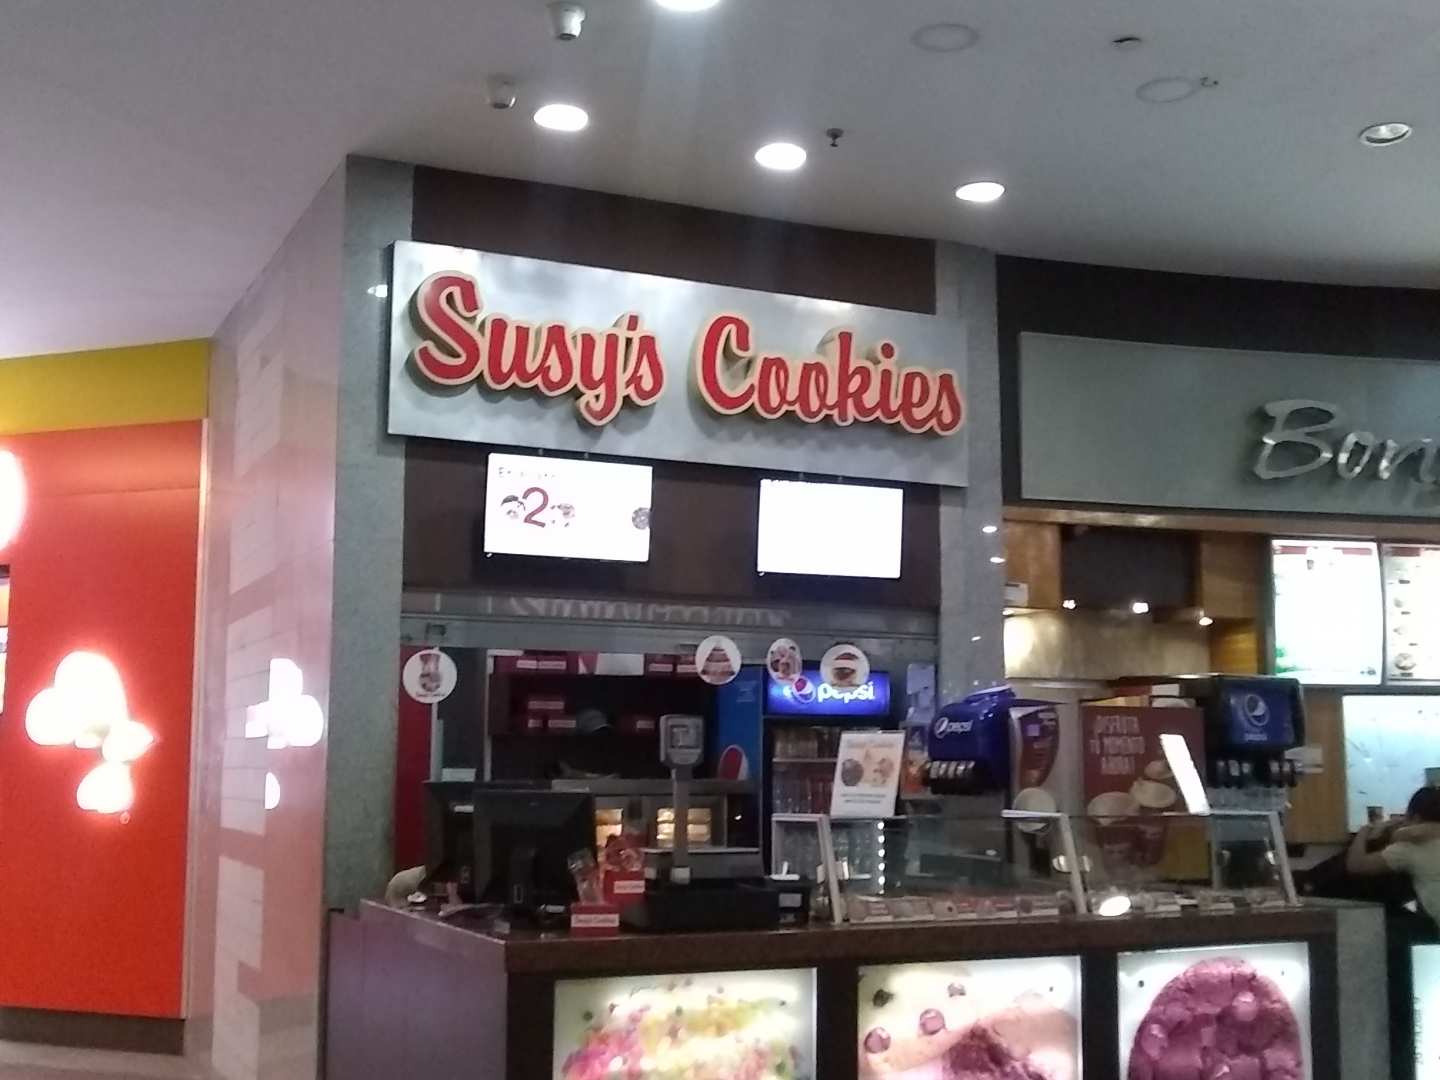 Susy's Cookies (C.C. Lider)